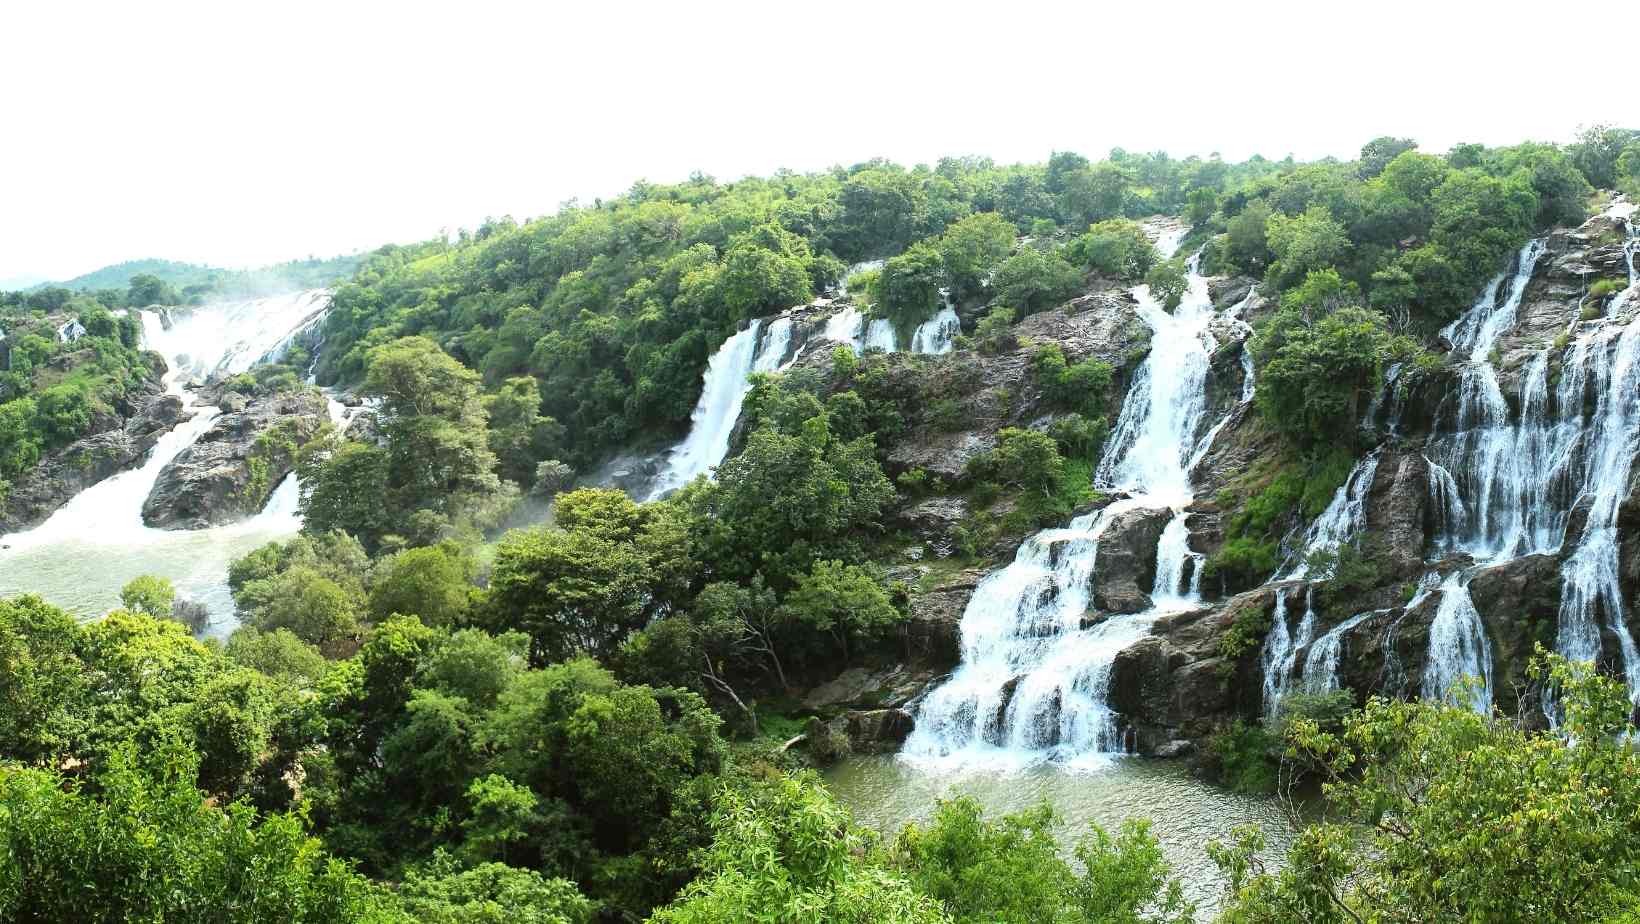 Shivanasamudra falls in Karnataka